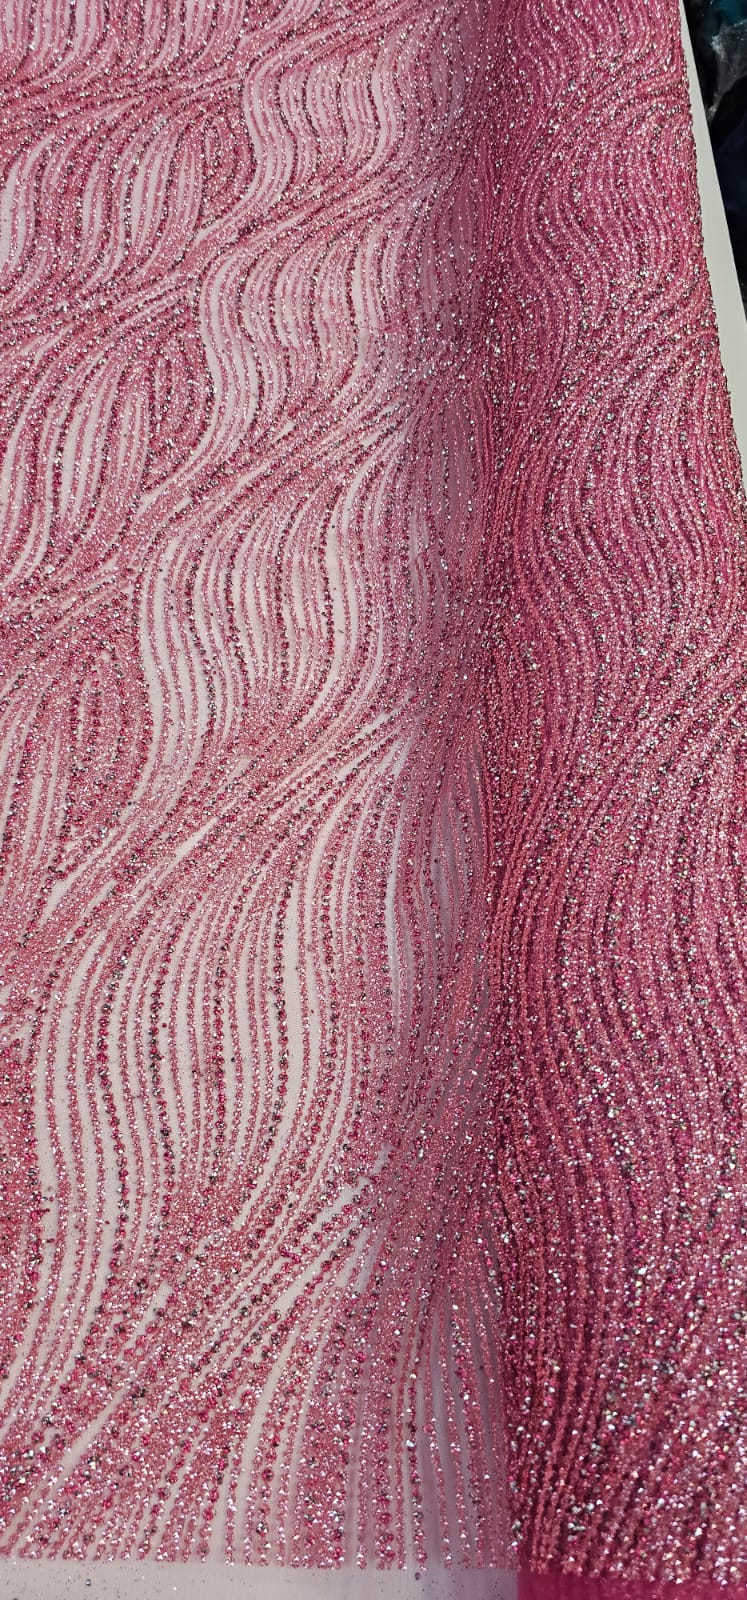 Tule com Glitter Diamond Wave Rosa Chiclete Furado - Largura 1,45 m x Comprimento 1 m 